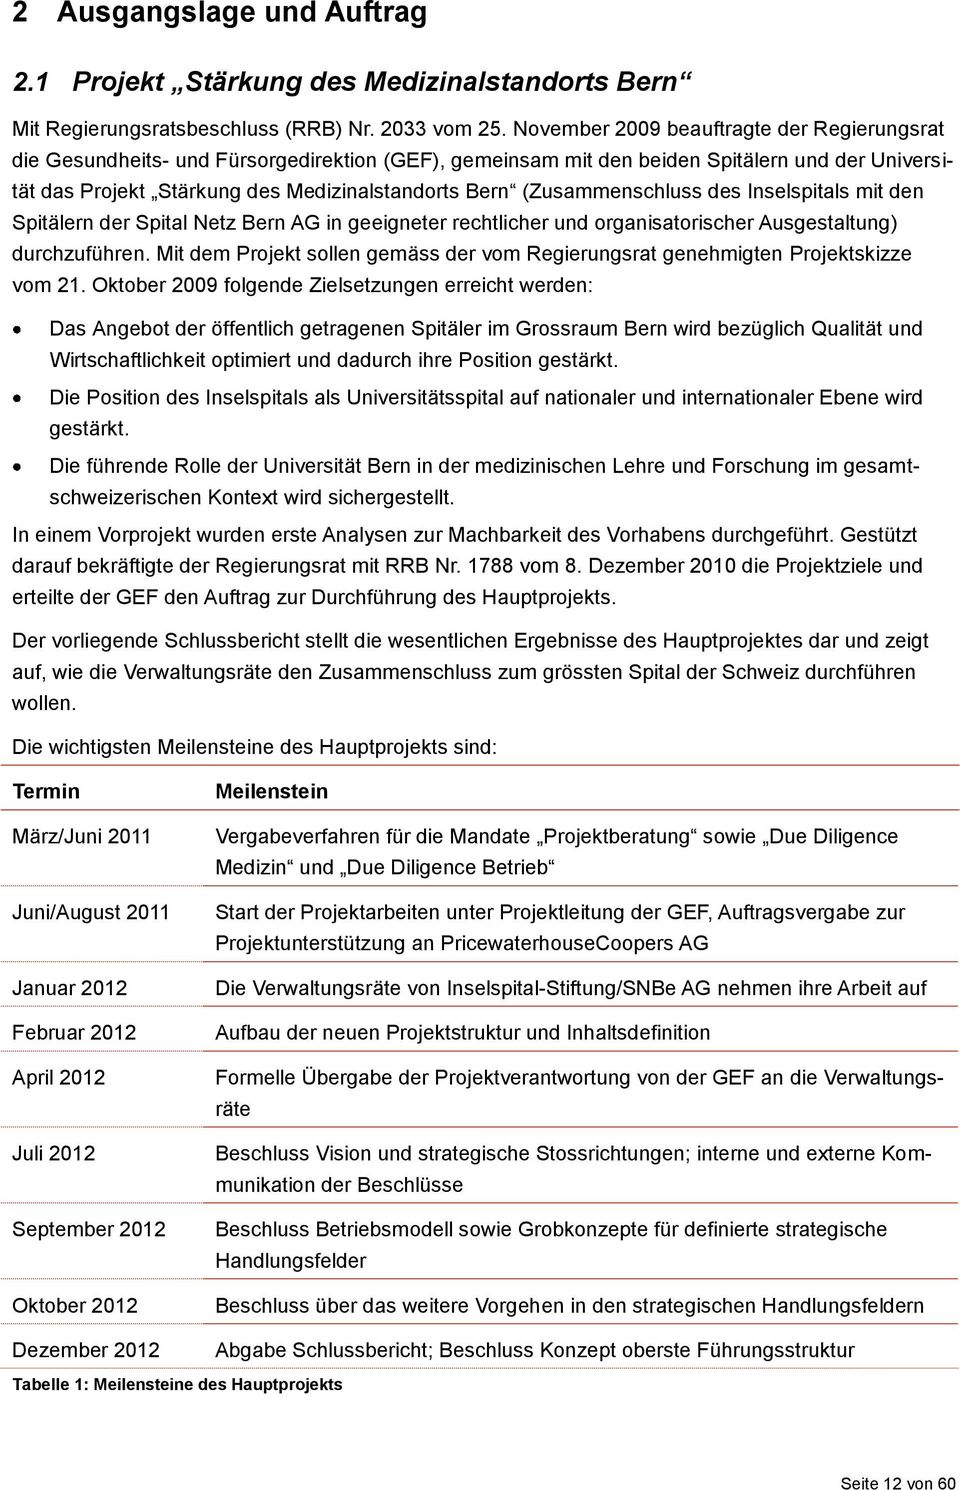 (Zusammenschluss des Inselspitals mit den Spitälern der Spital Netz Bern AG in geeigneter rechtlicher und organisatorischer Ausgestaltung) durchzuführen.